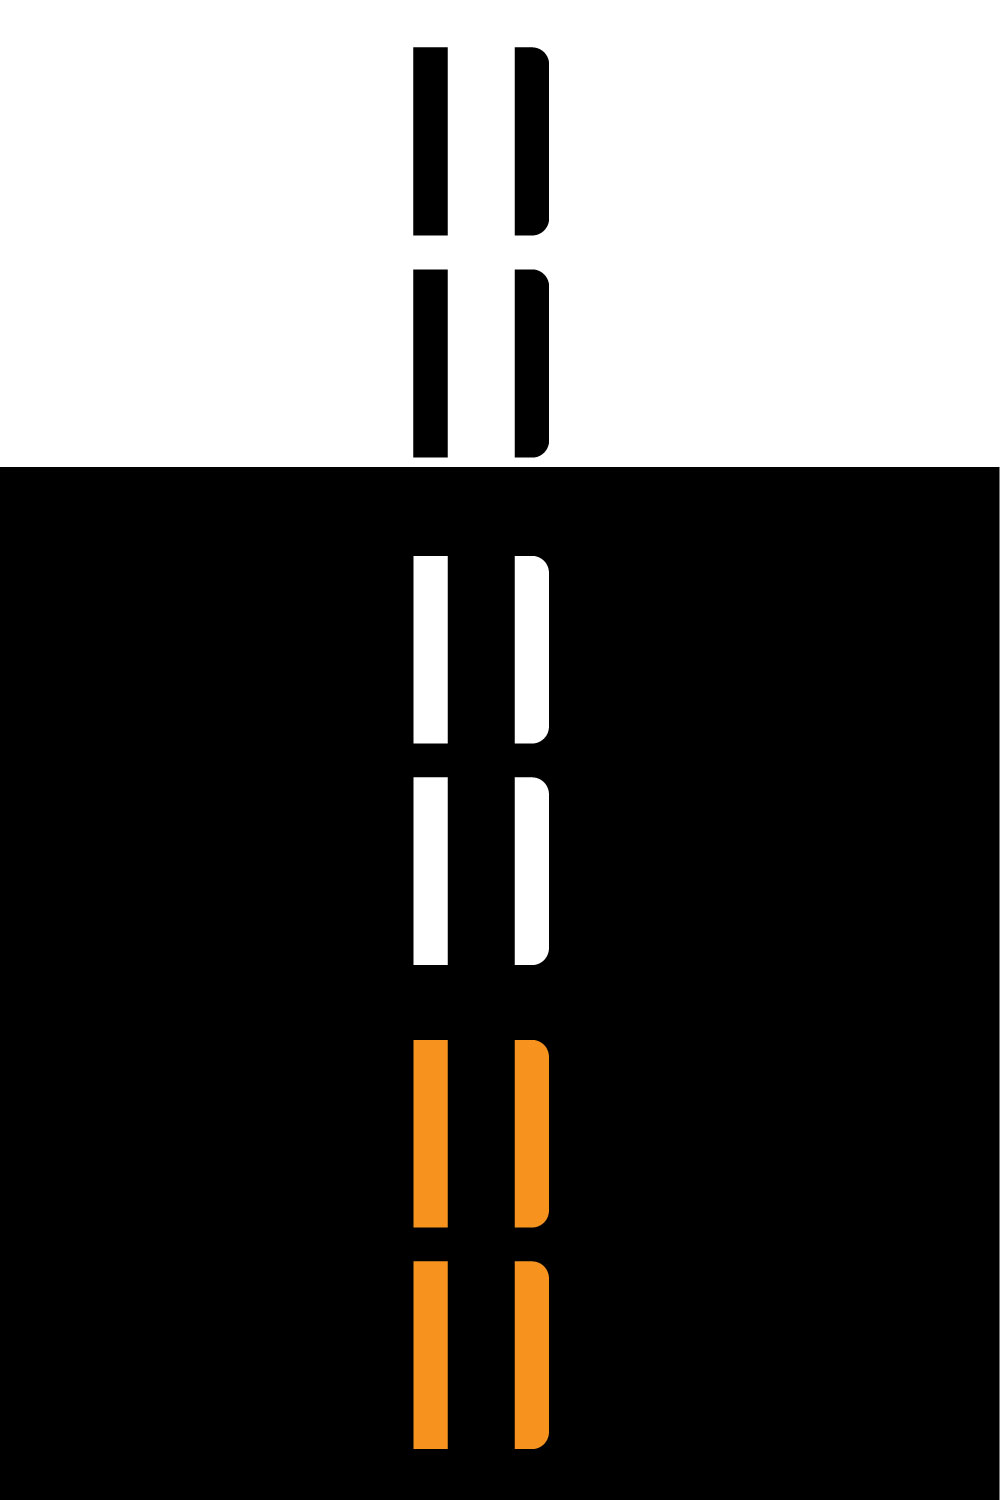 B Monogram Letter Logo pinterest image.